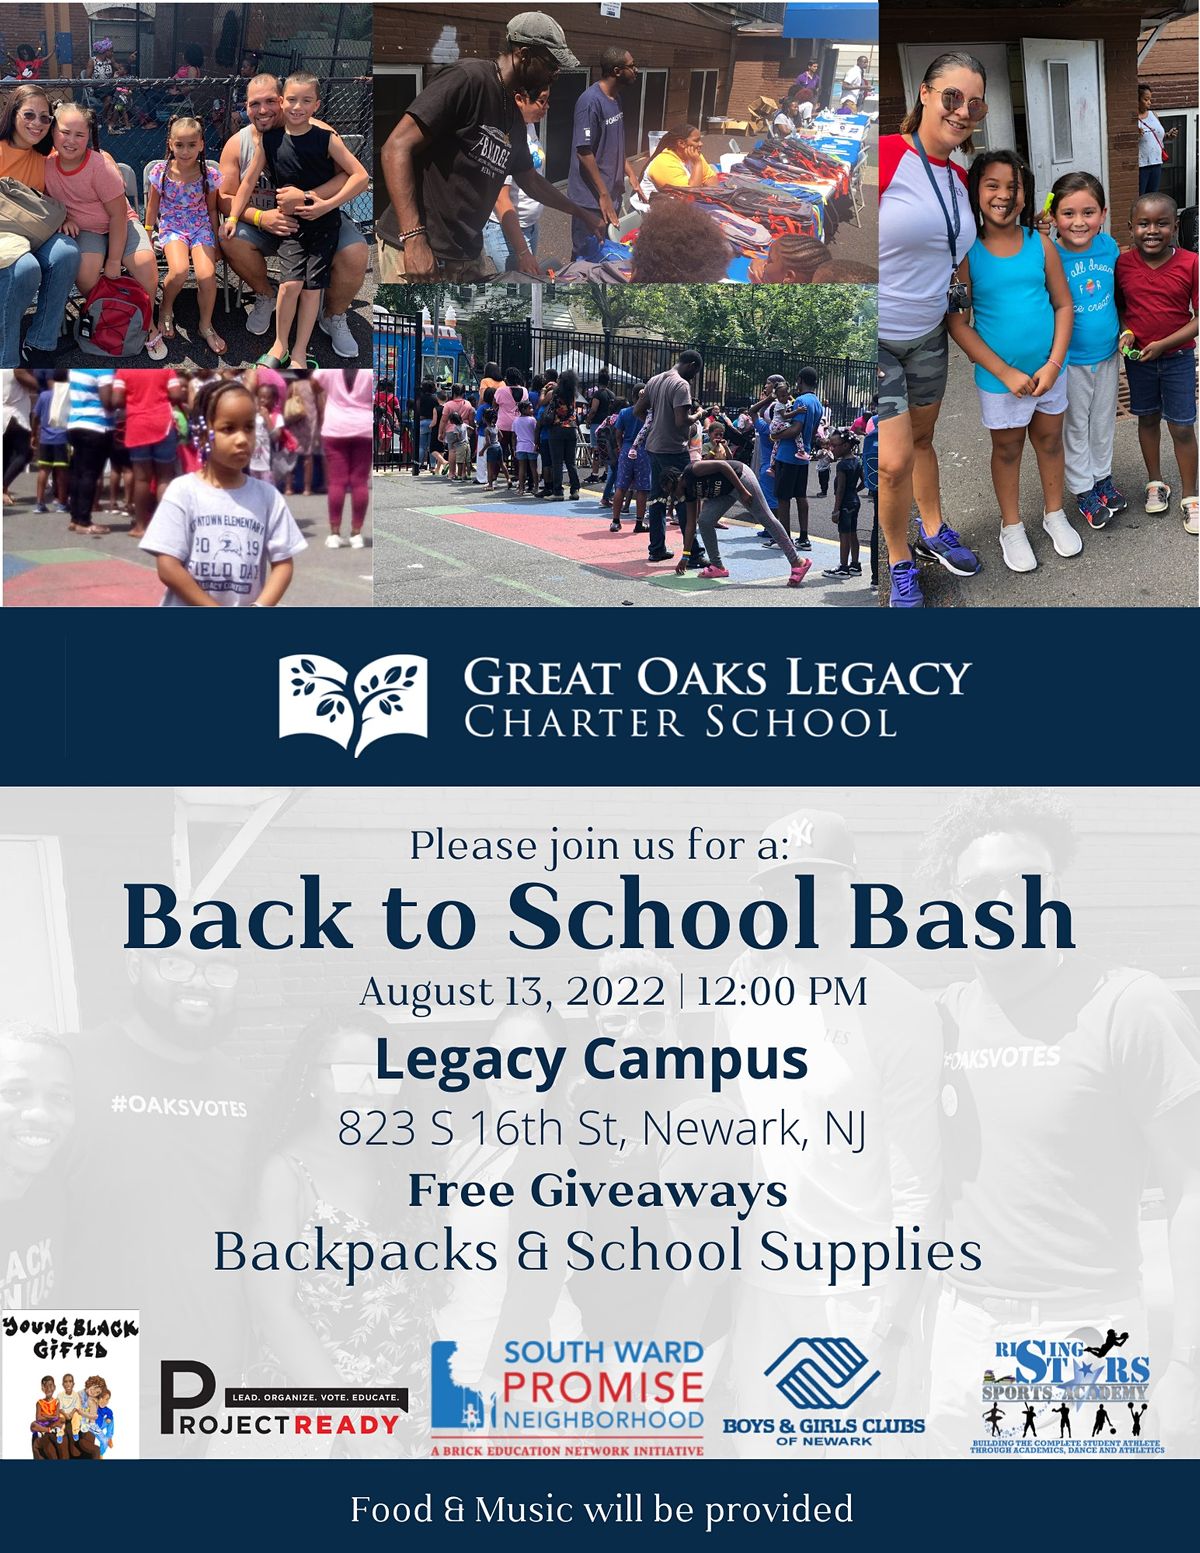 Great Oaks Legacy Charter School Back to School Bash 2022, Newark